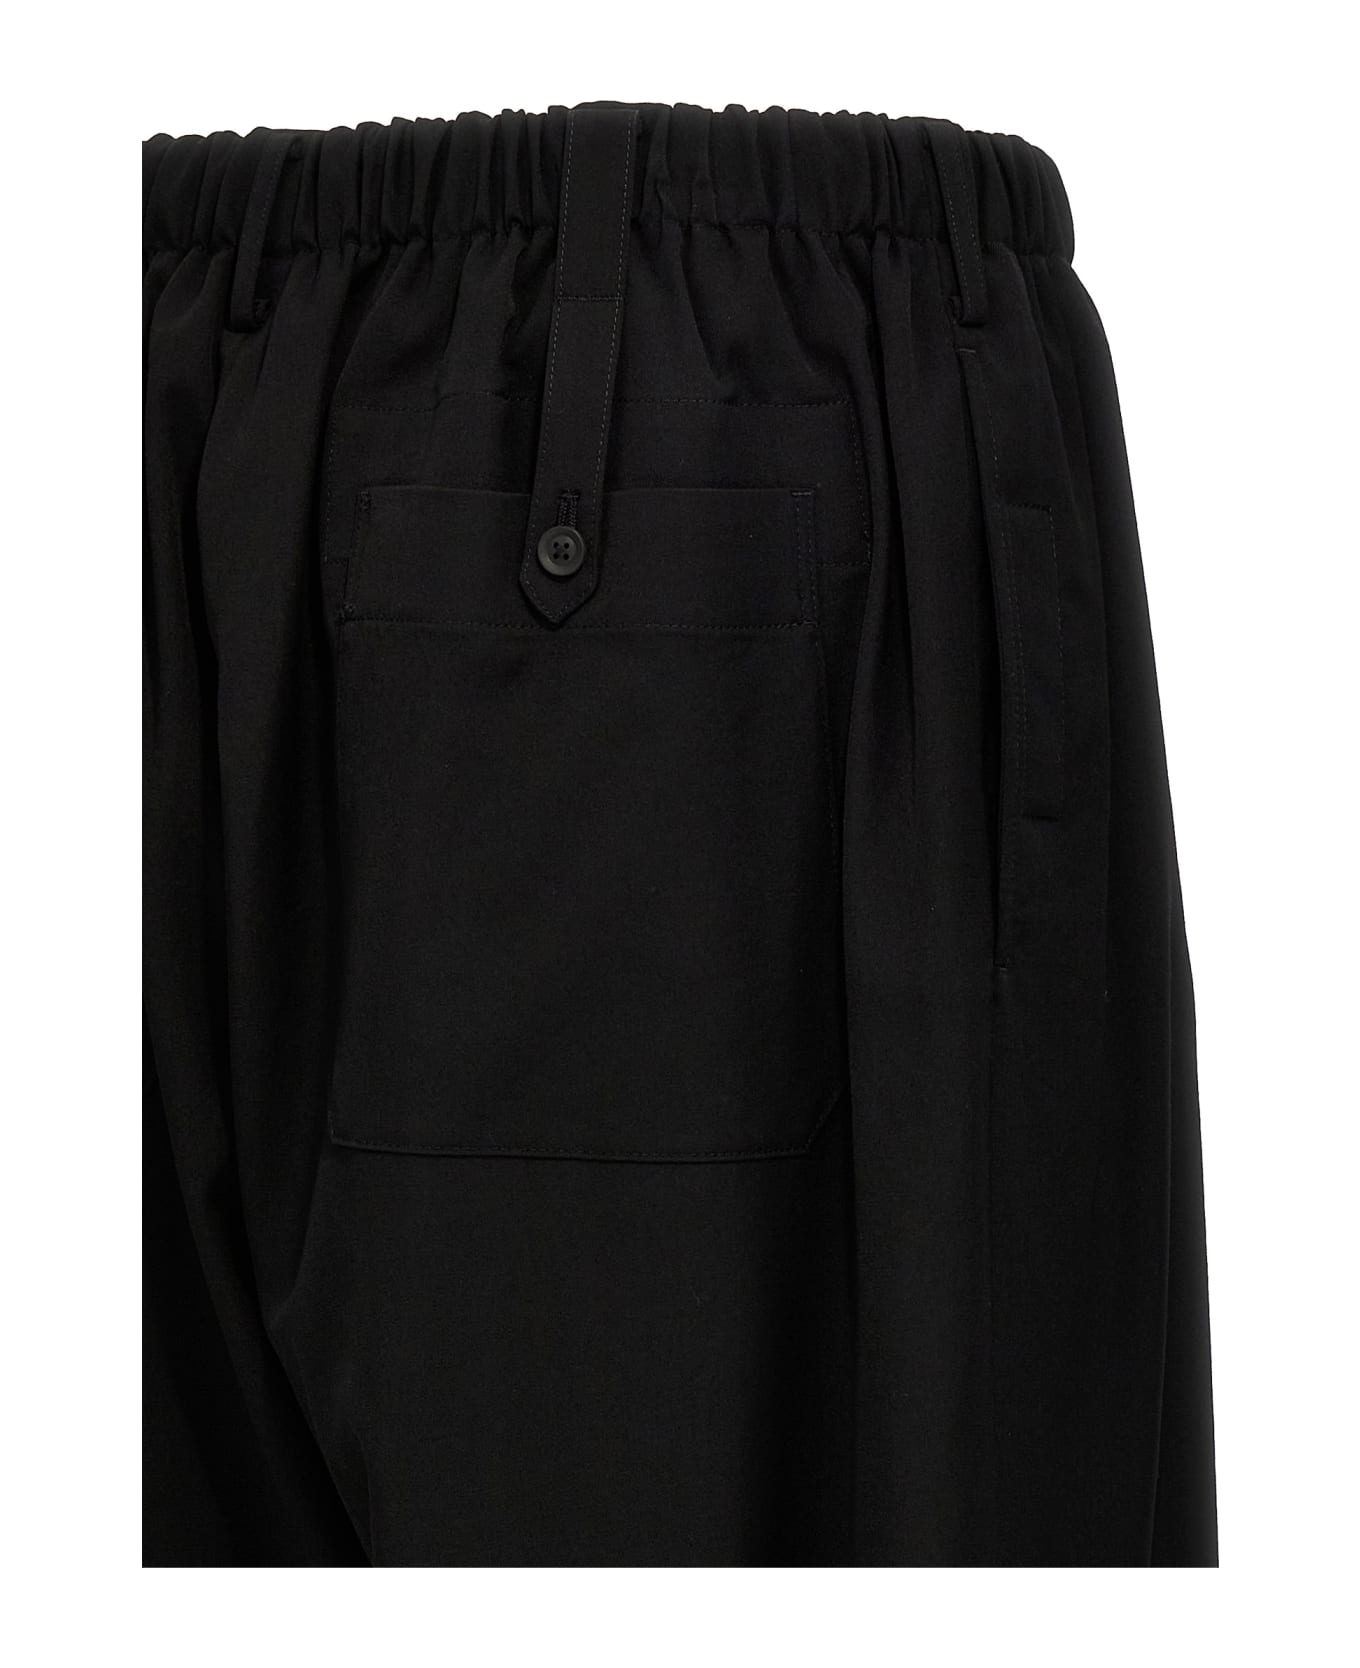 Yohji Yamamoto 'u-gather Cropped' Pants - Black  